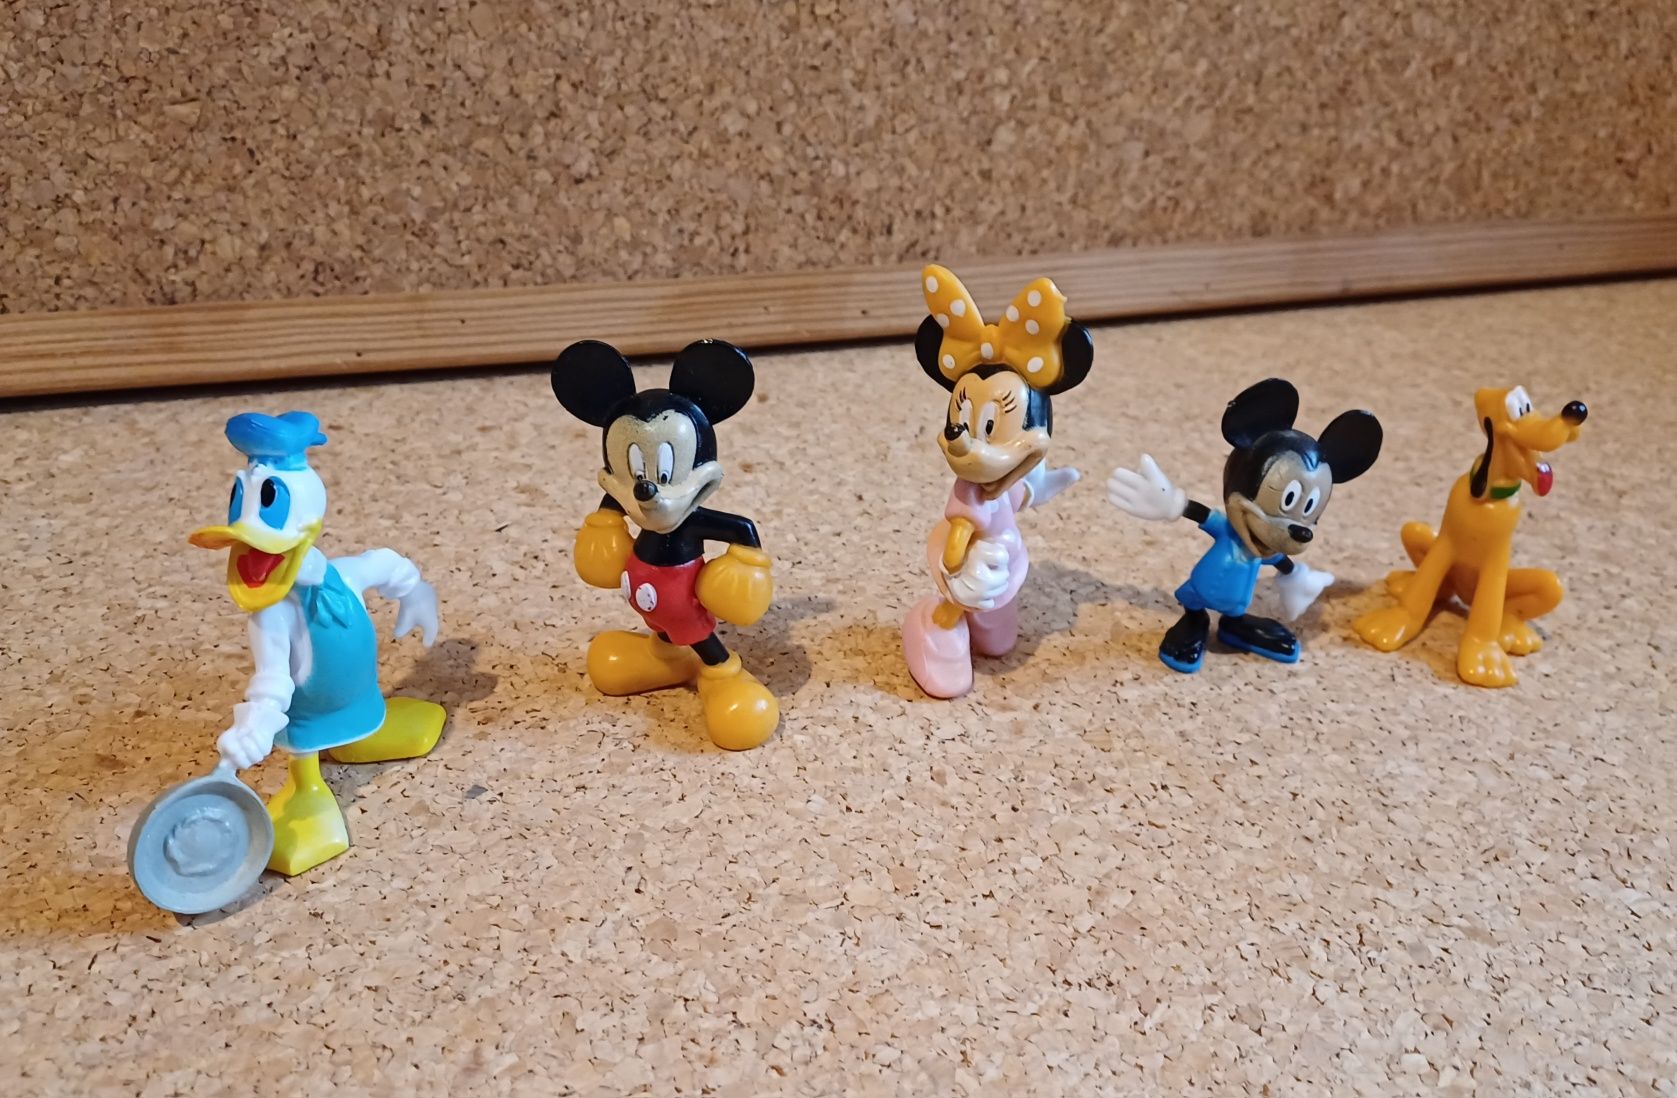 Conjunto de 5 bonecos Disney, 2 Mickey, Minnie, Pluto, Donald